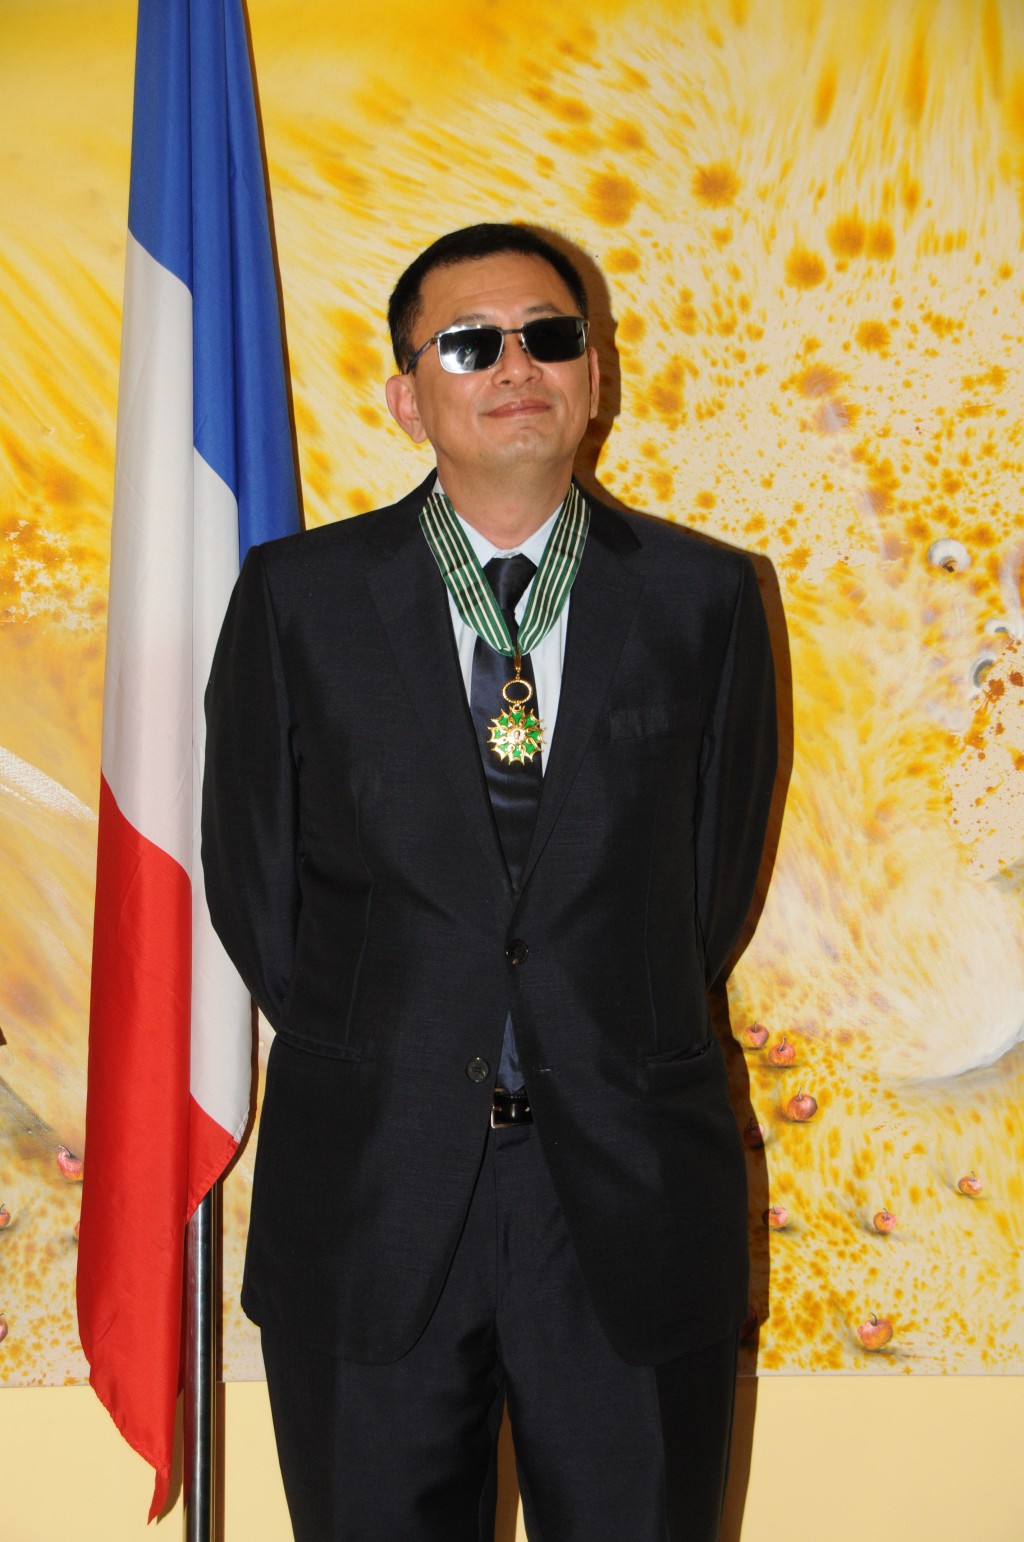 2013年王家衛獲頒授法國法蘭西藝術與文學勳章中，最高等級的「司令勳章」。